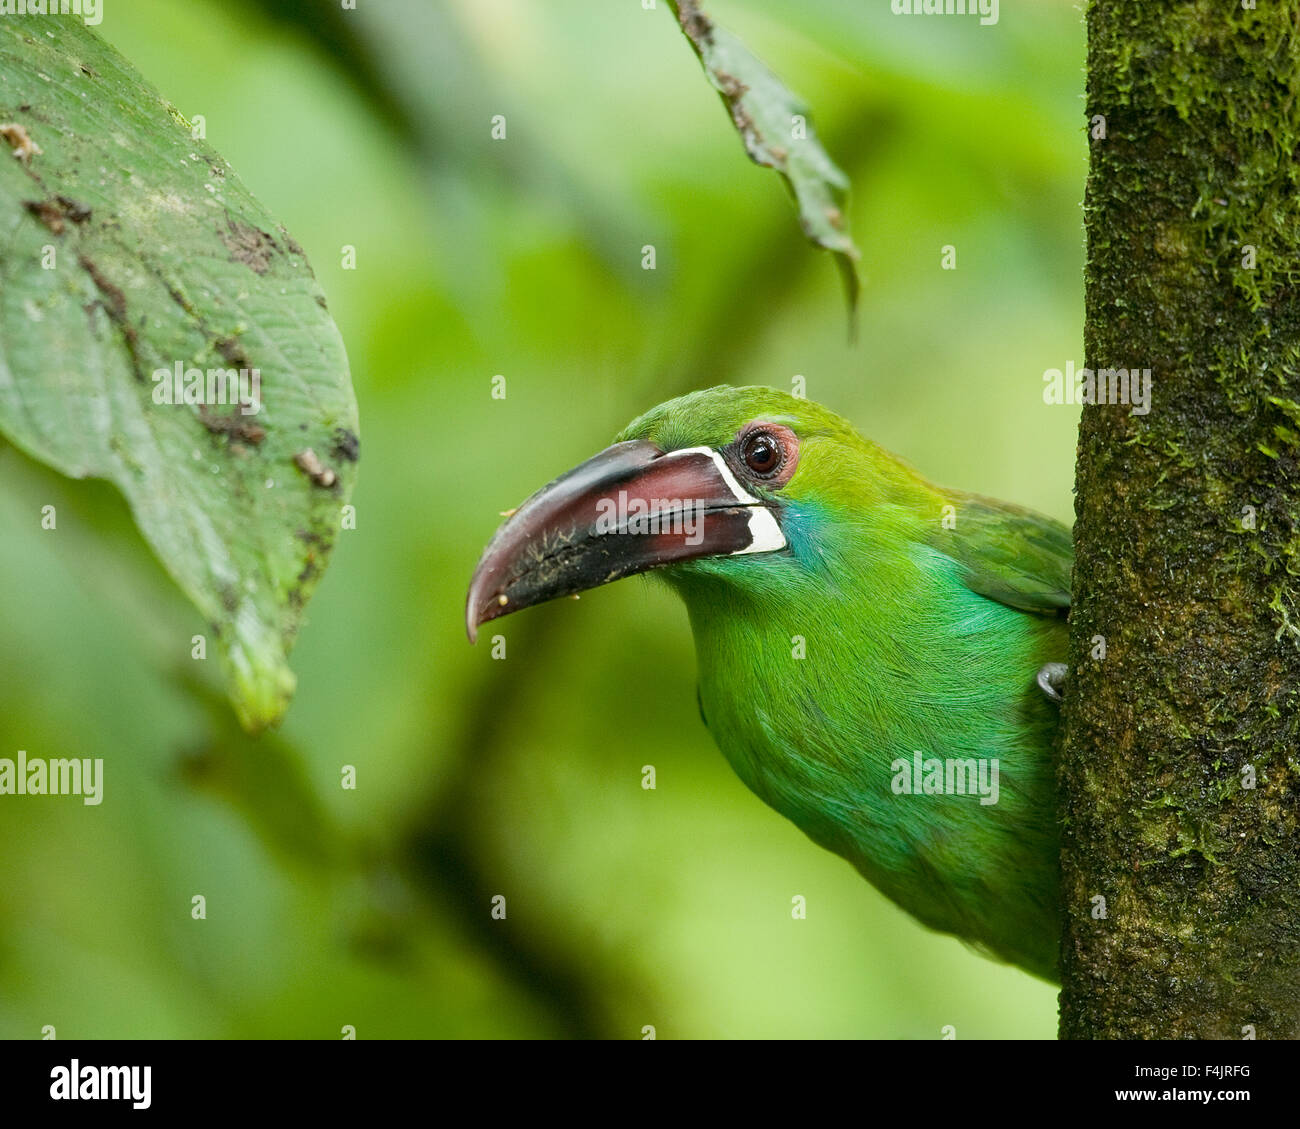 L'Amérique de l'avant bec grand oiseau close-up image de couleur l'Équateur d'œil exotique jungle horizontale verte ne cherchez pas les gens à l'extérieur peep Banque D'Images